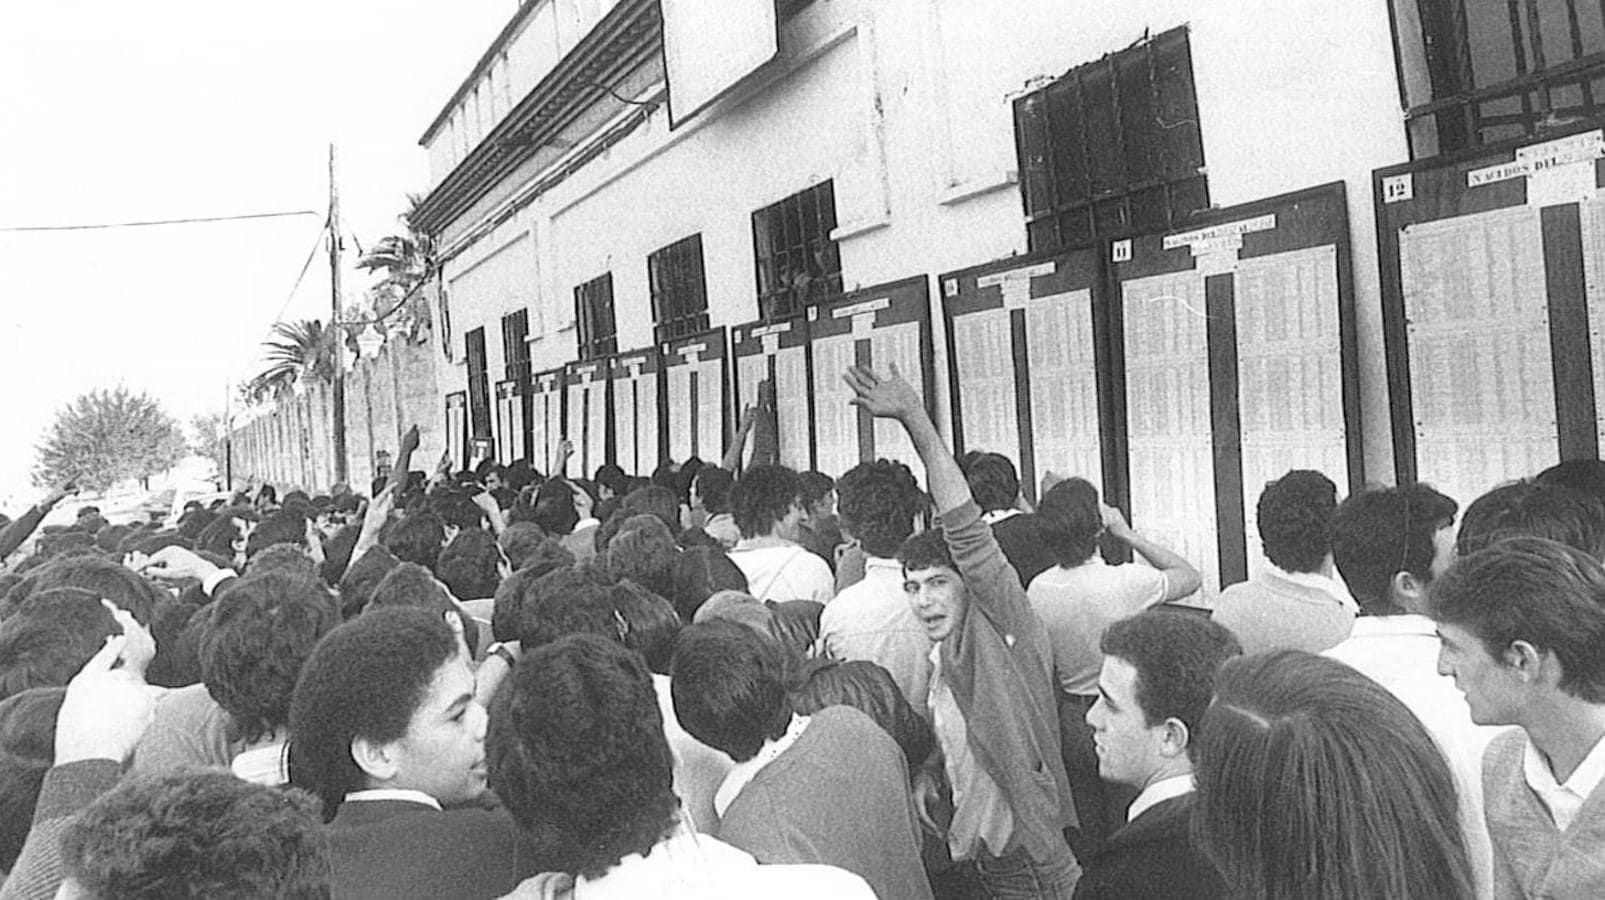 Veinte años del servicio militar obligatorio: imágenes históricas de los sorteos de quintos en Sevilla